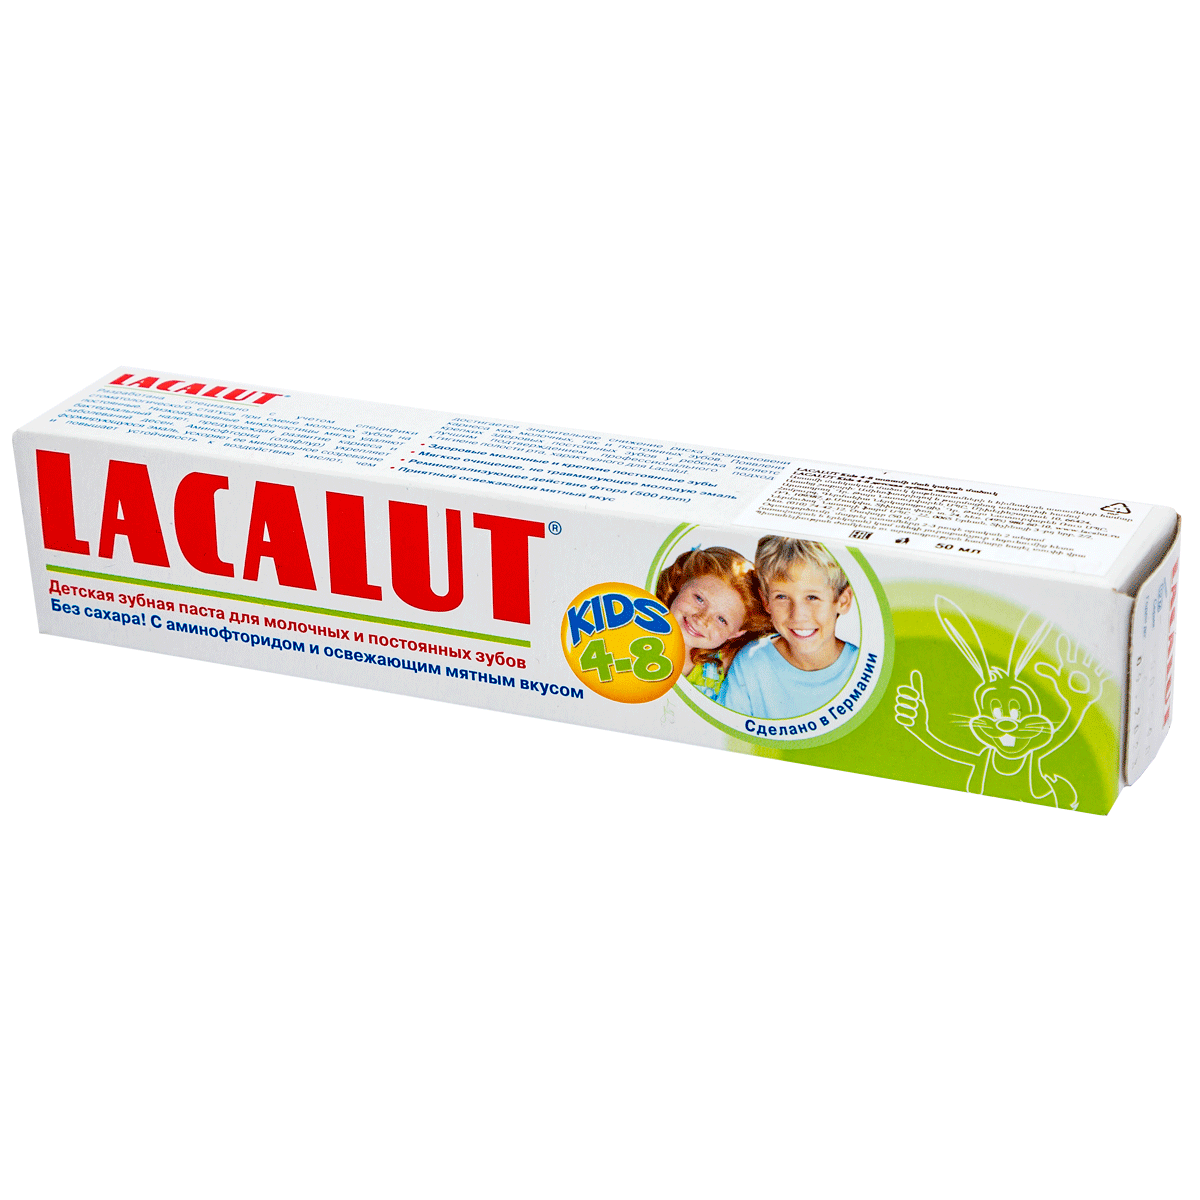 Ատամի մածուկ մանկական Lacalut Baby 